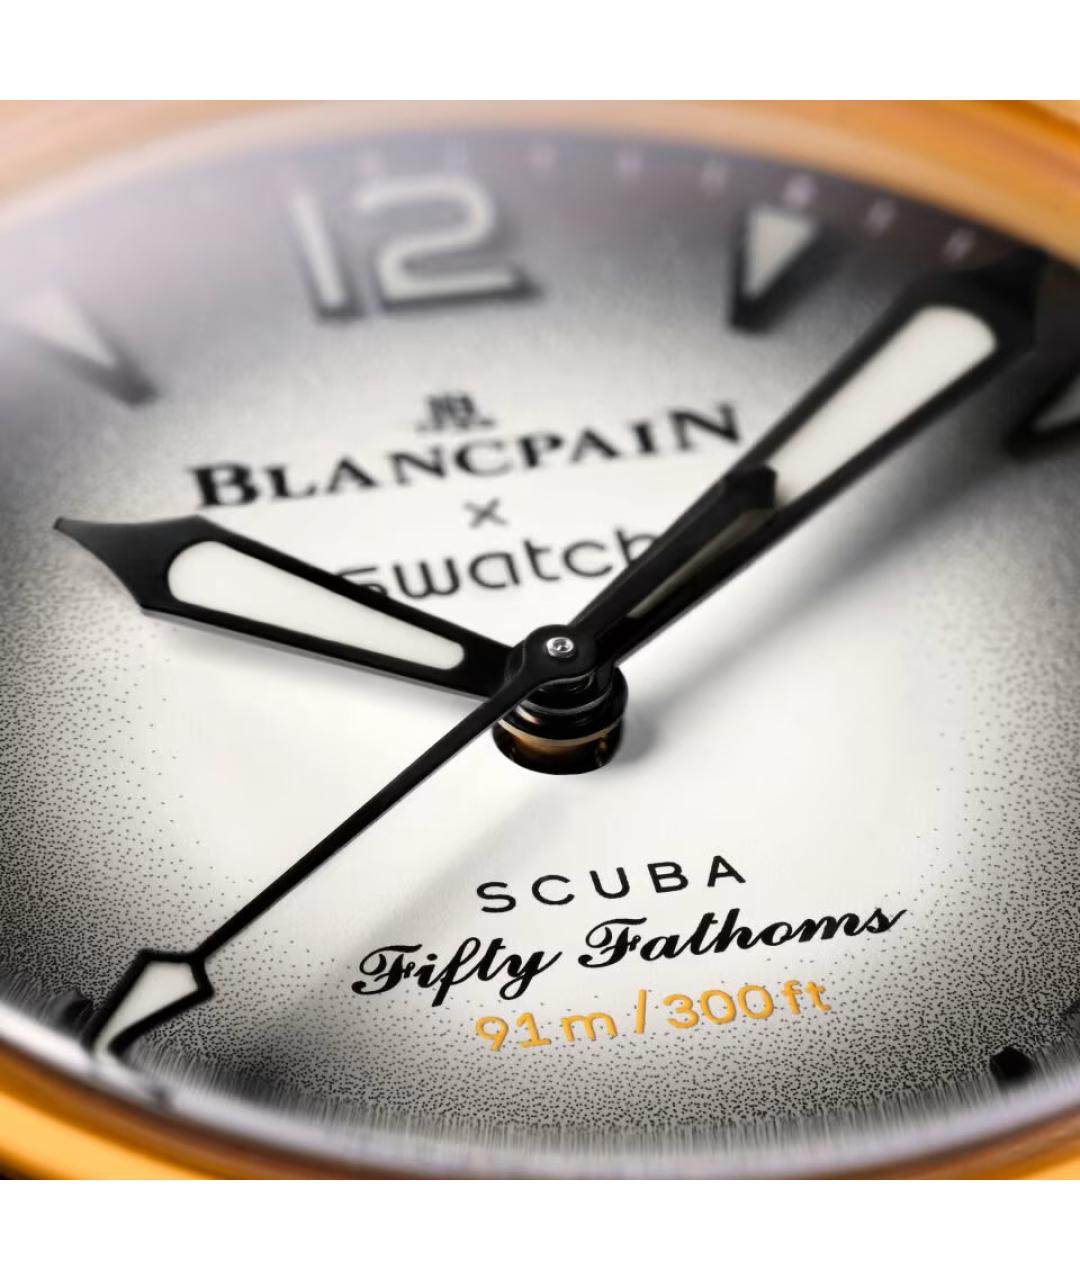 Blancpain Желтые керамические часы, фото 4